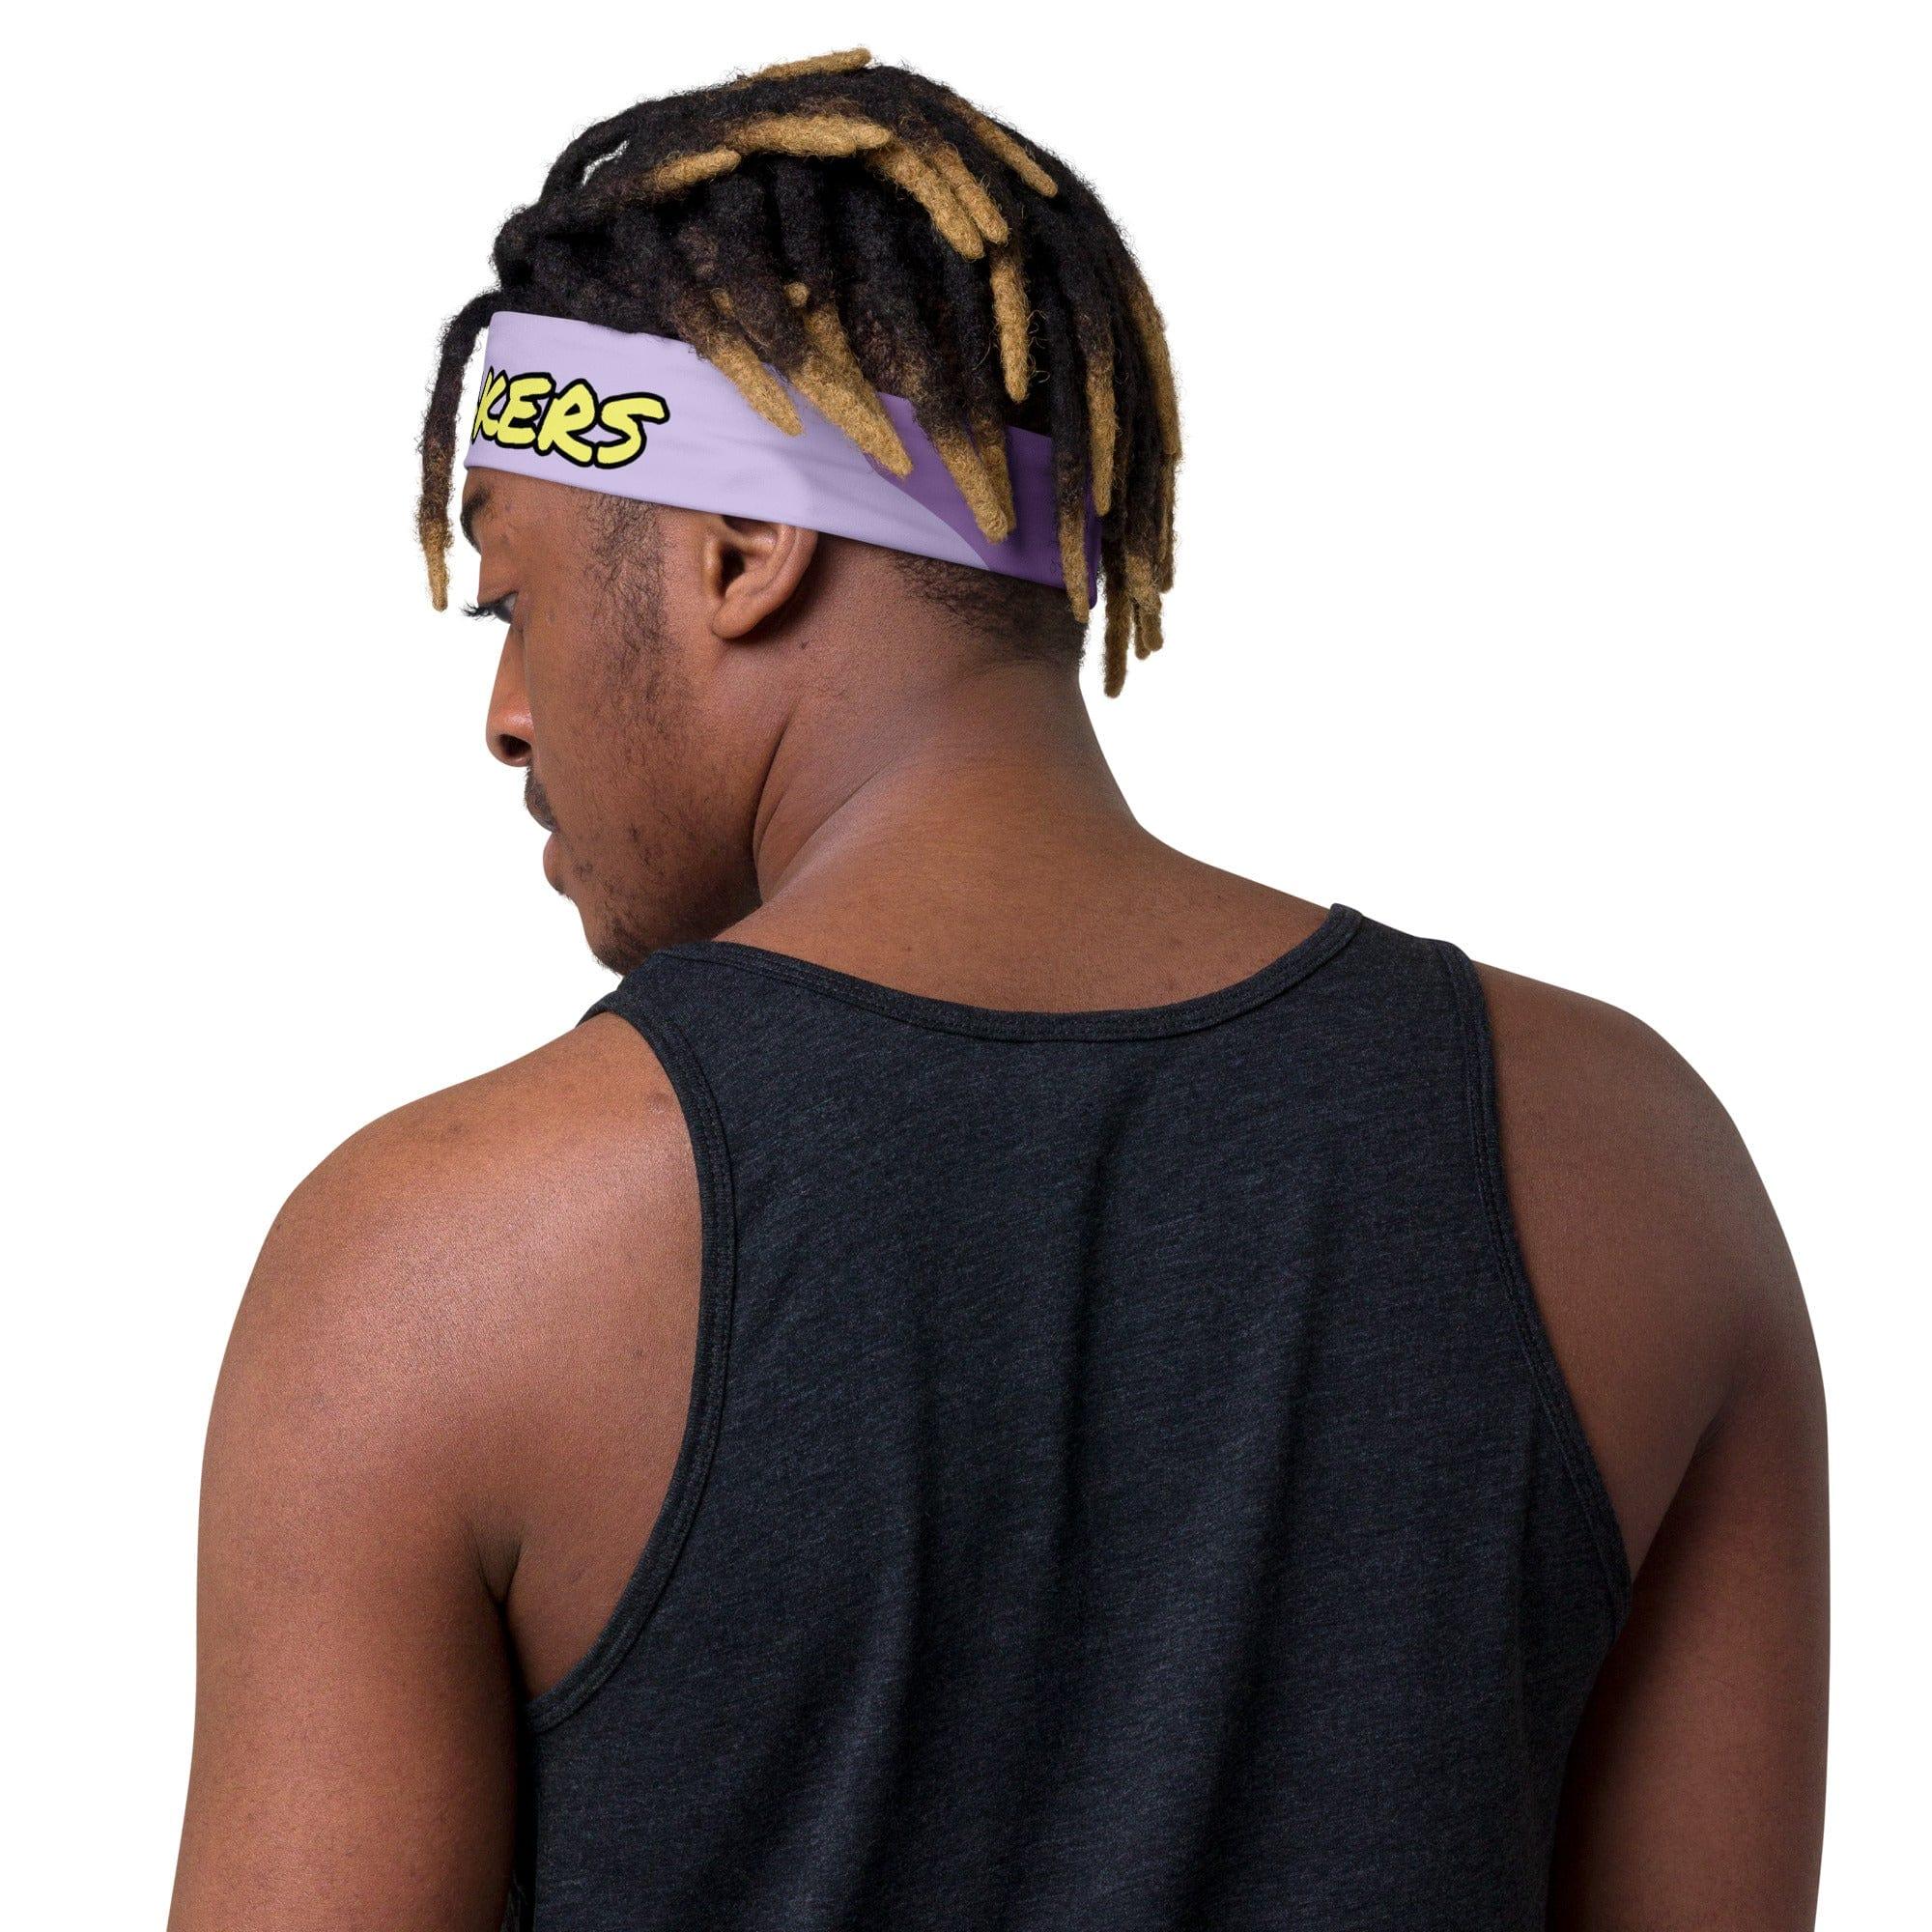 LA Lakers Headband in Purple Camo Quick Dry Sports Head Tie - TopKoalaTee